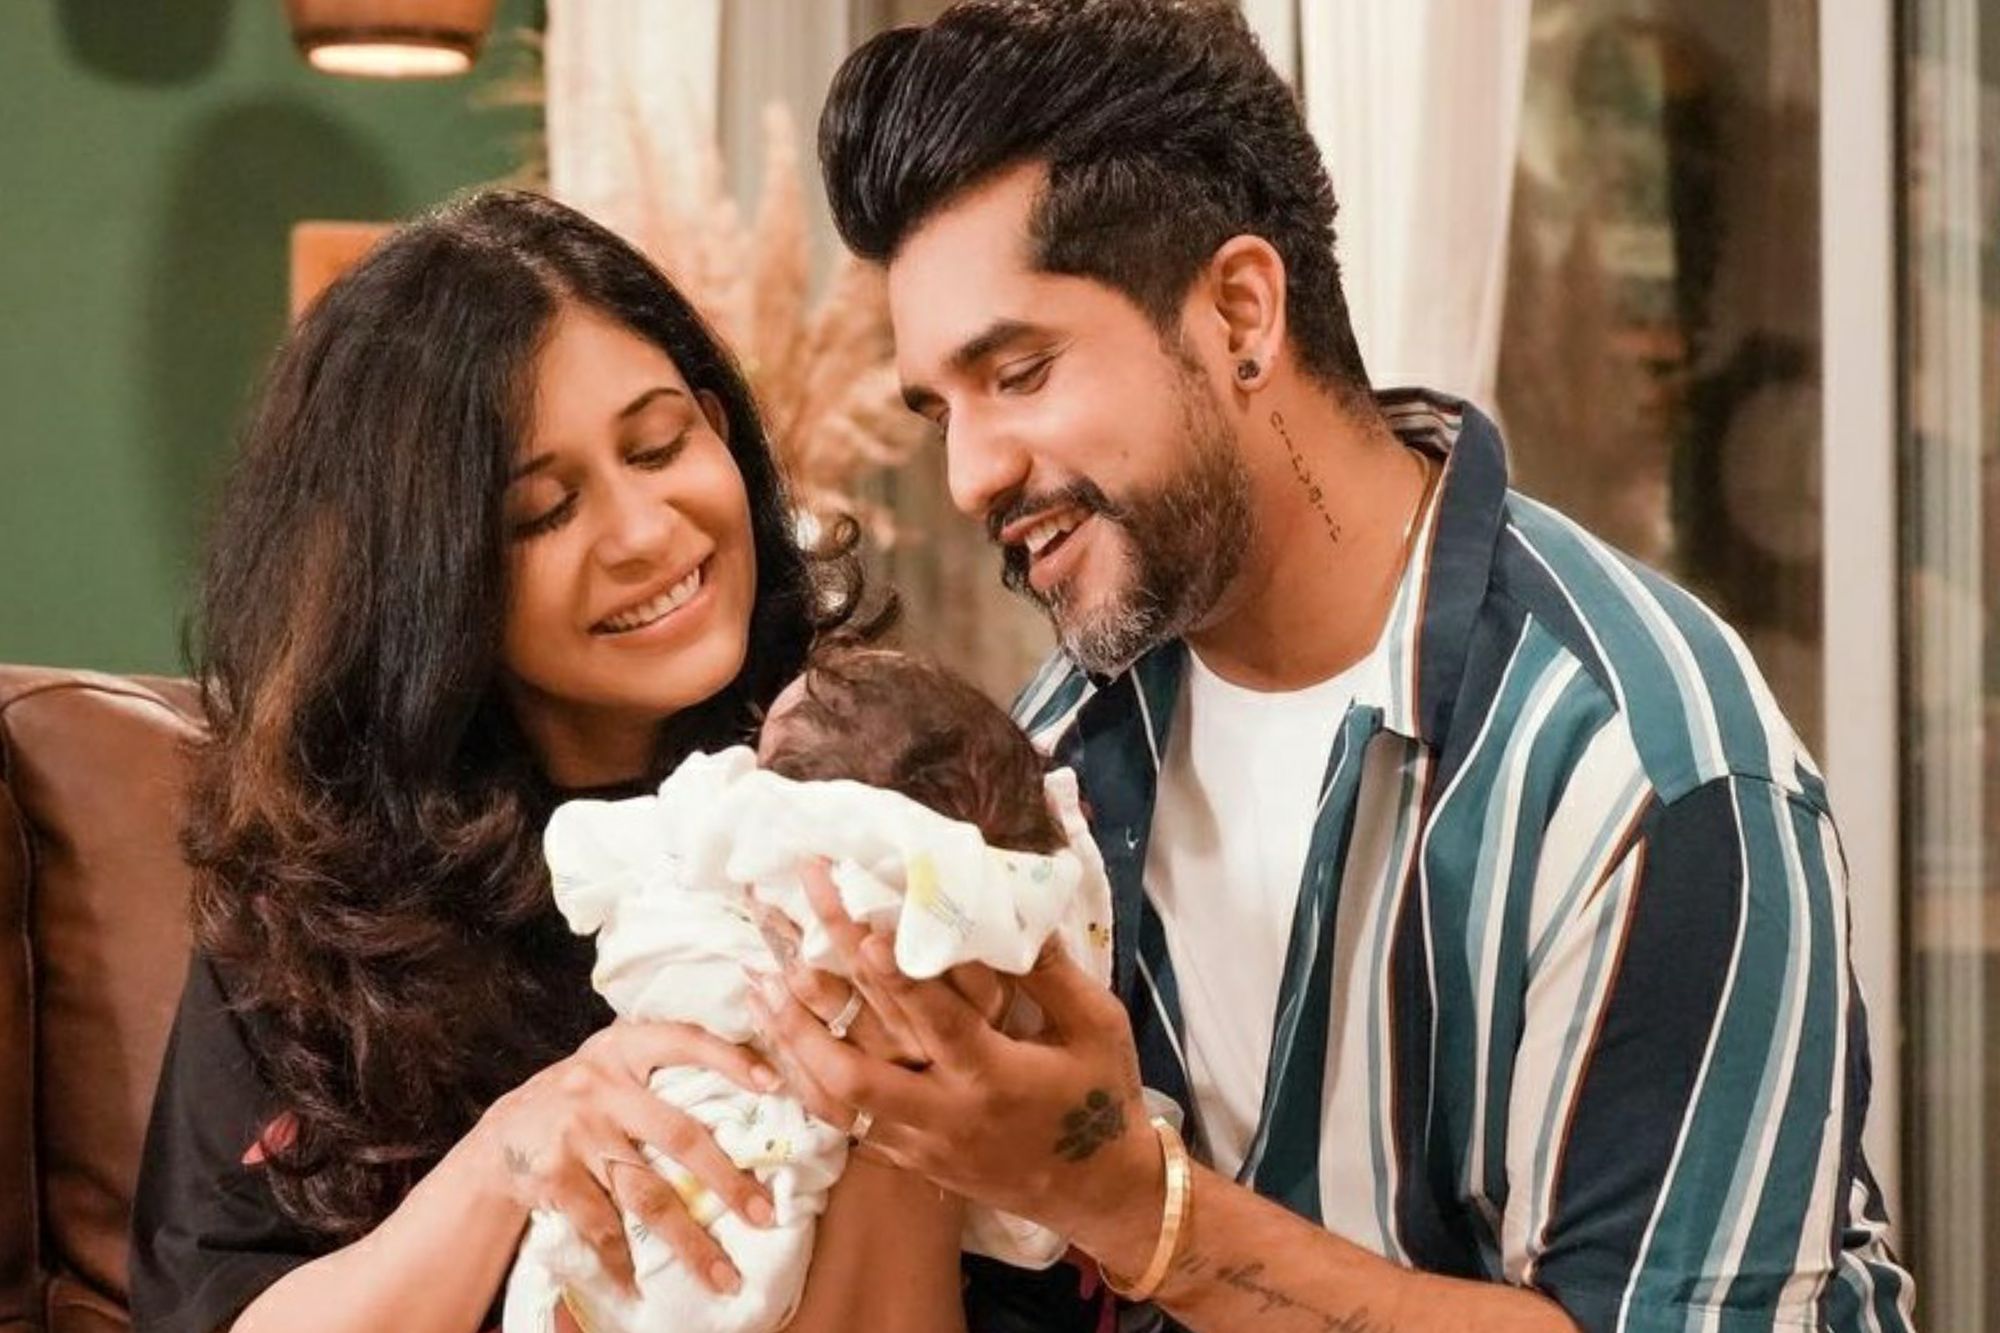 सुयश राय और किश्वर मर्चेंट ने दी अपने बेबी बॉय निरवैर की झलक, यहाँ देखिये वीडियो